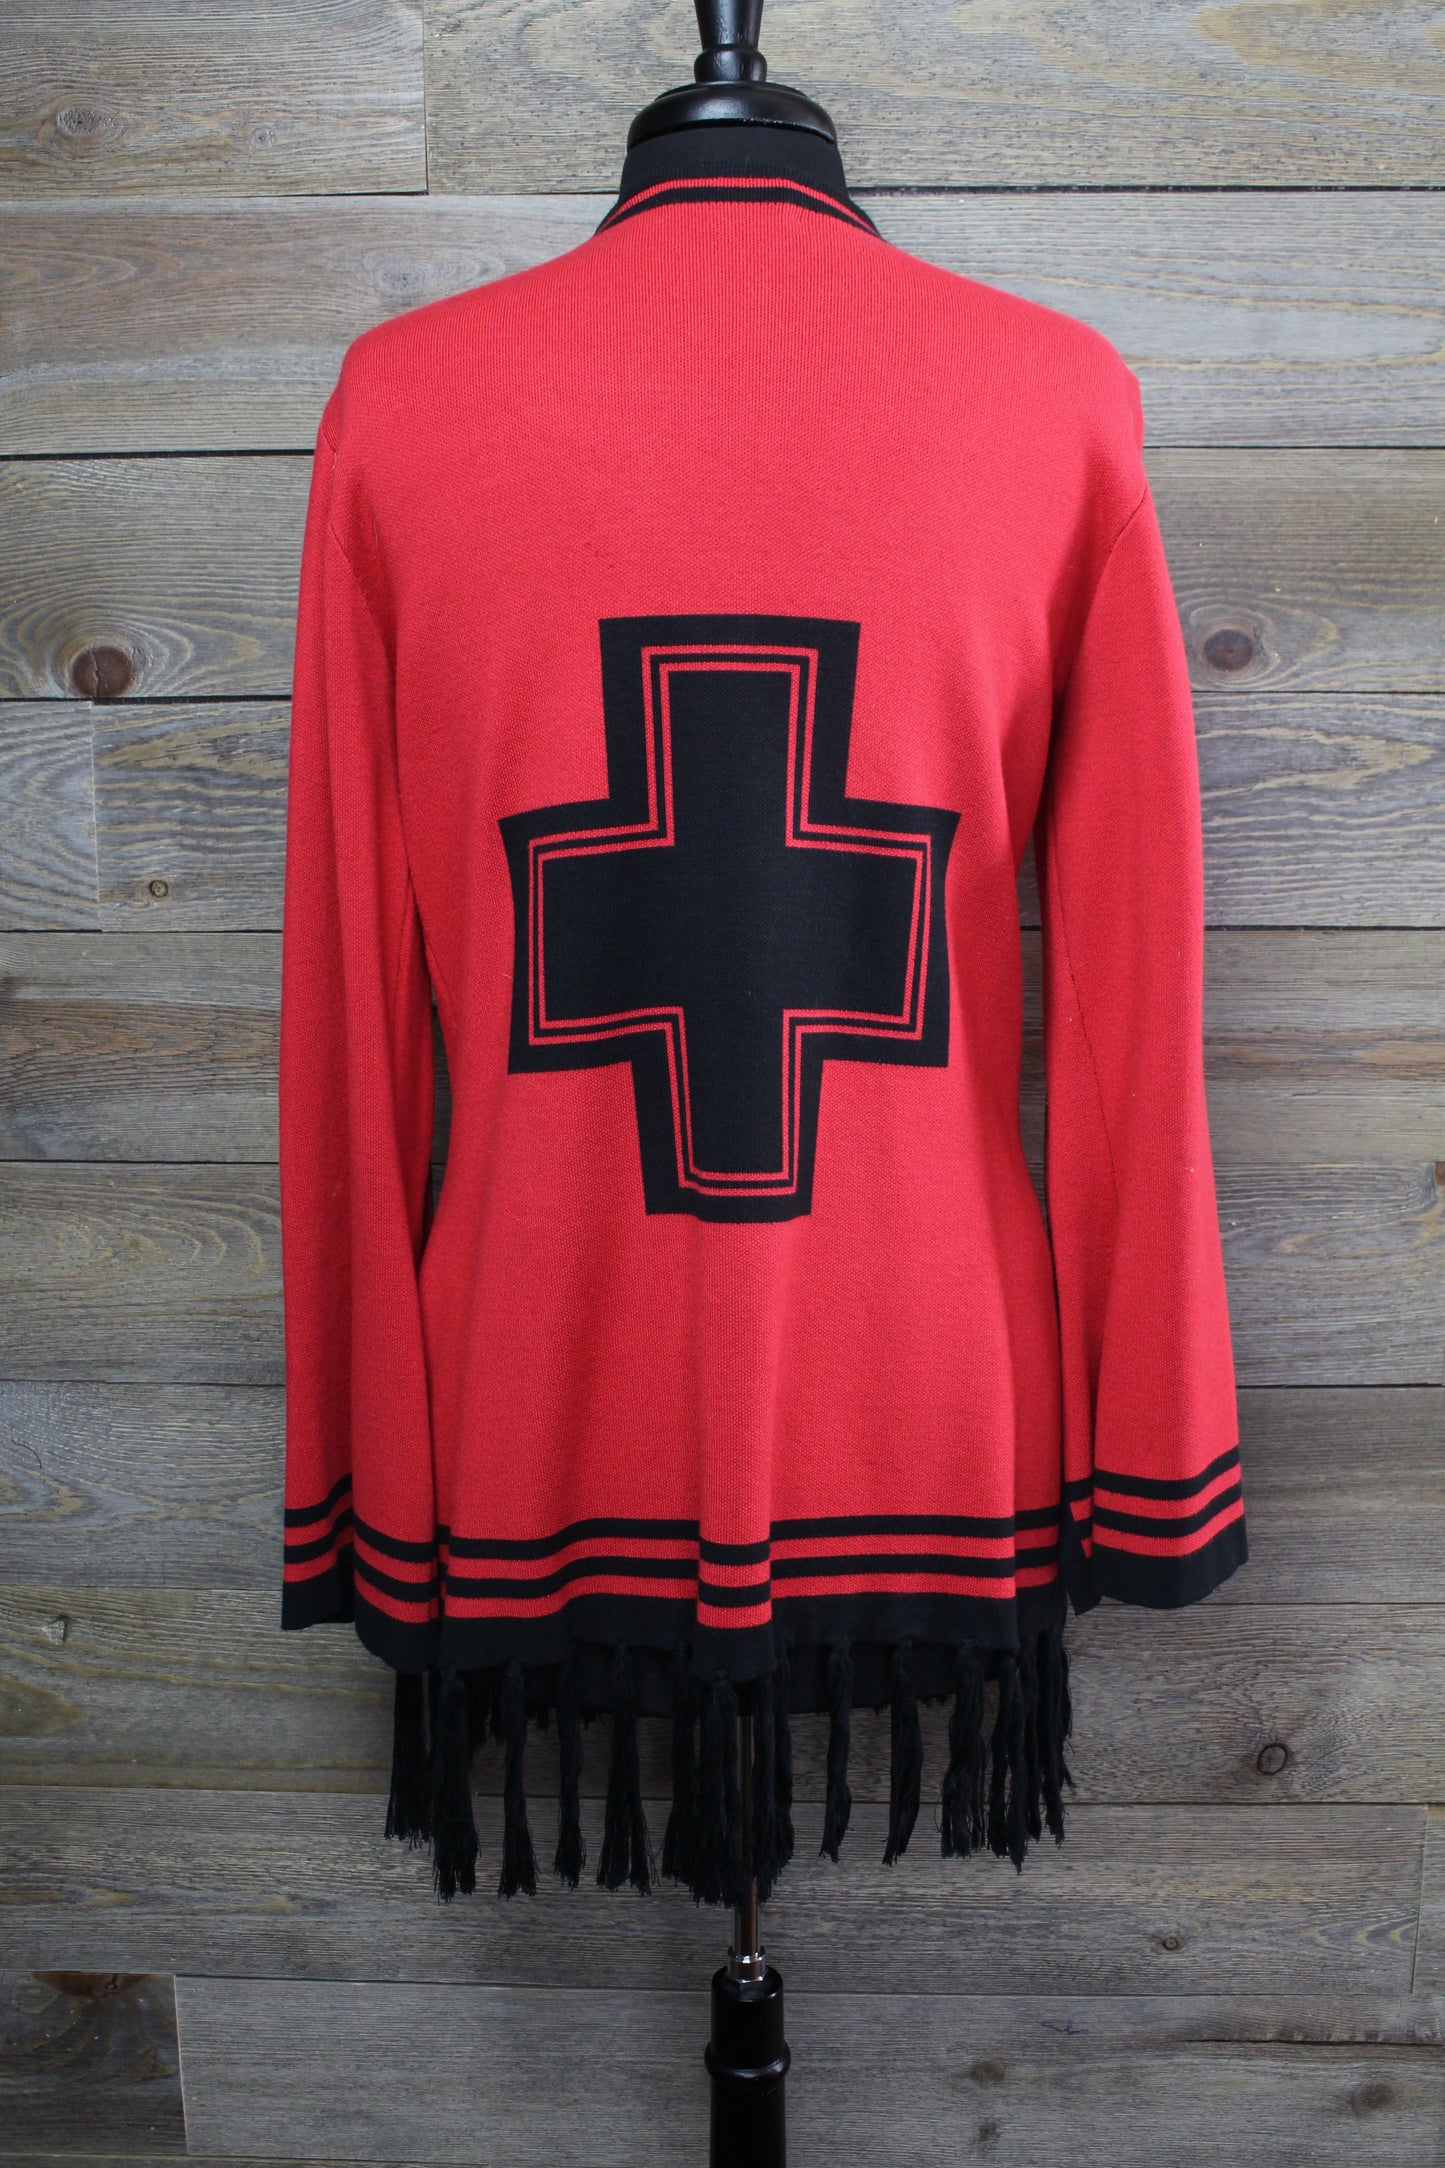 Warrior Red & Black Sweater